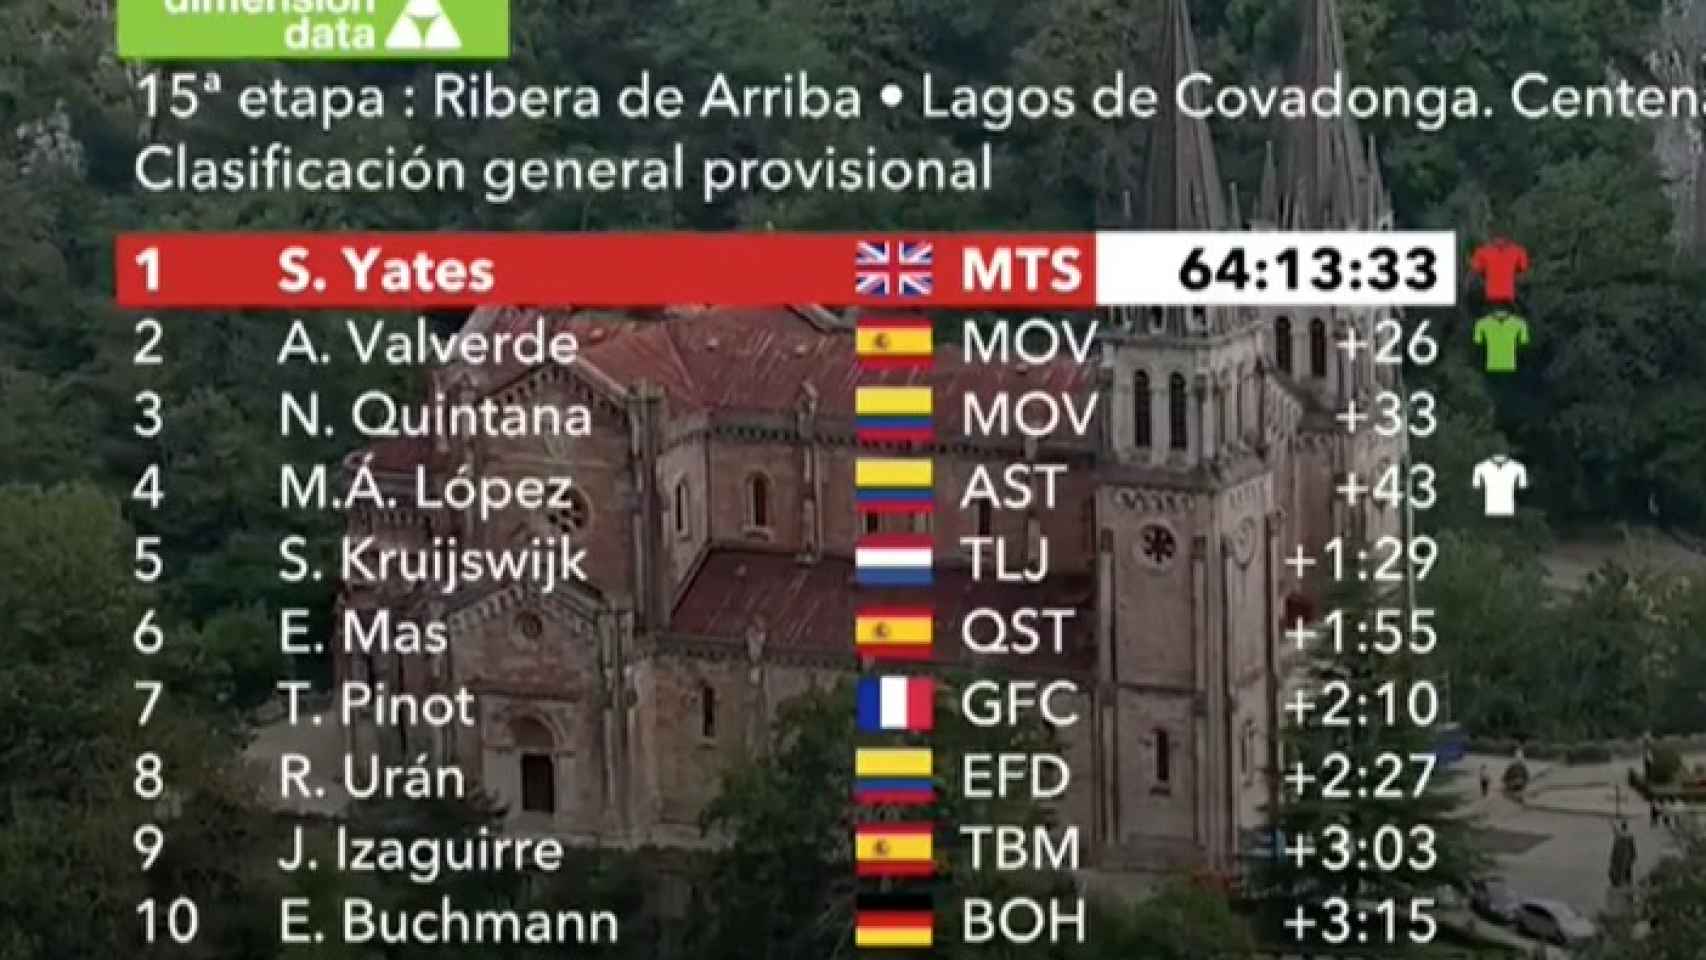 Clasificación general de La Vuelta tras la 15ª etapa